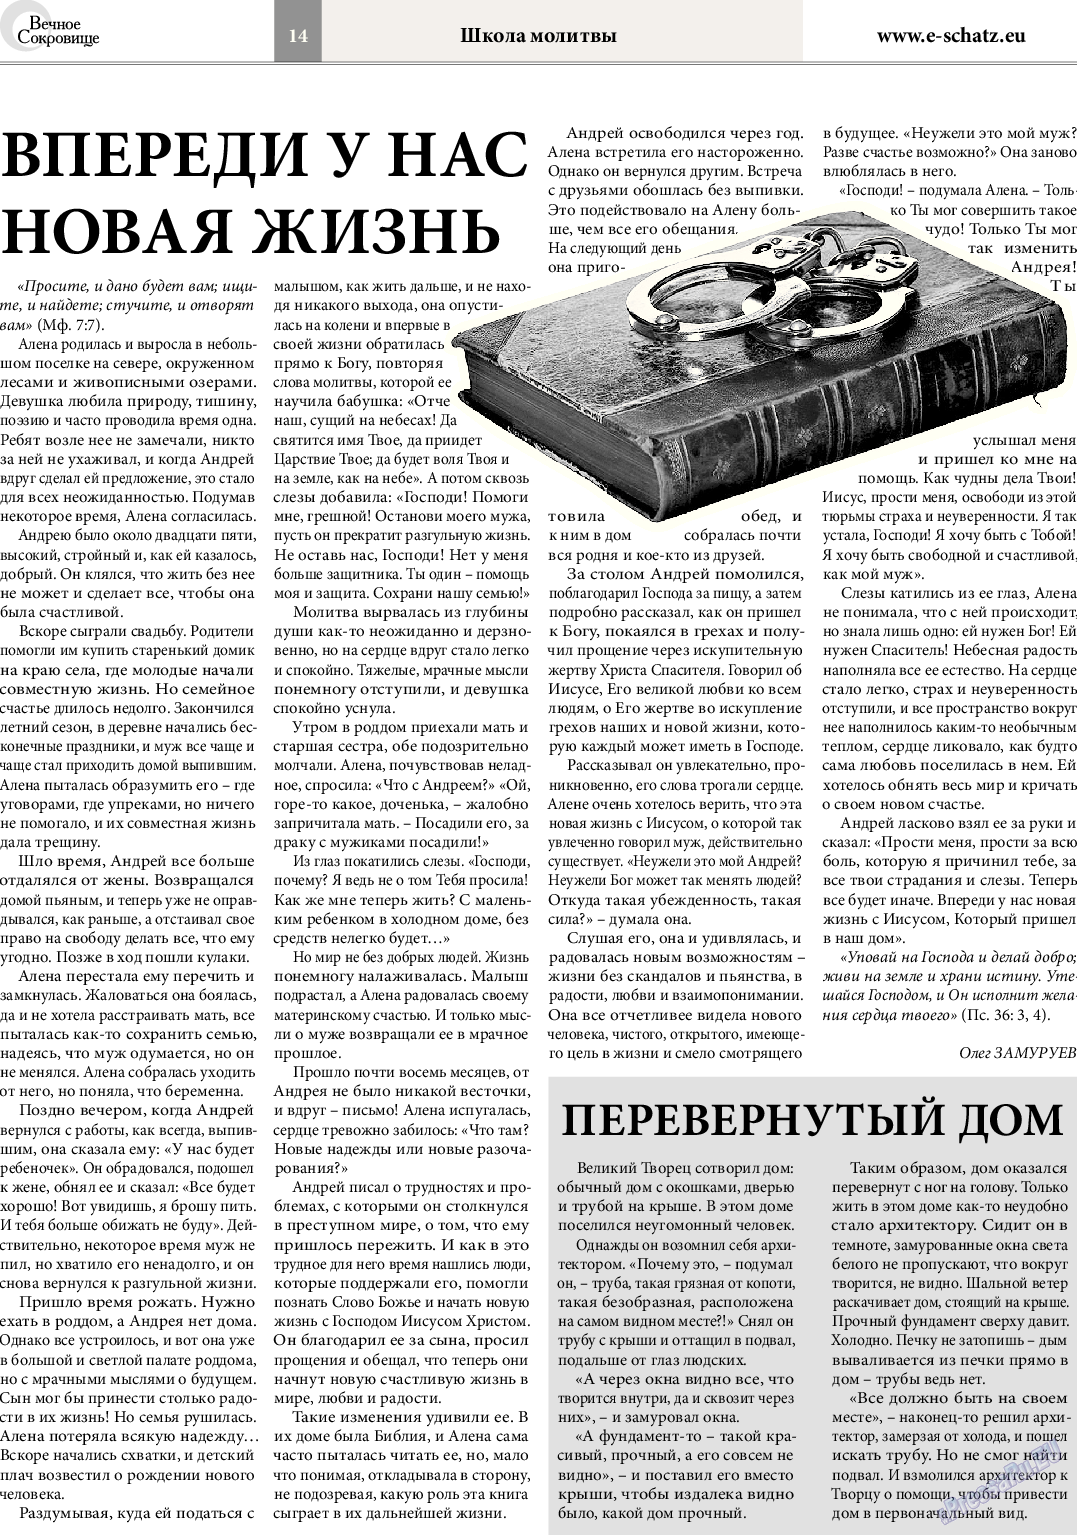 Вечное сокровище, газета. 2014 №3 стр.14